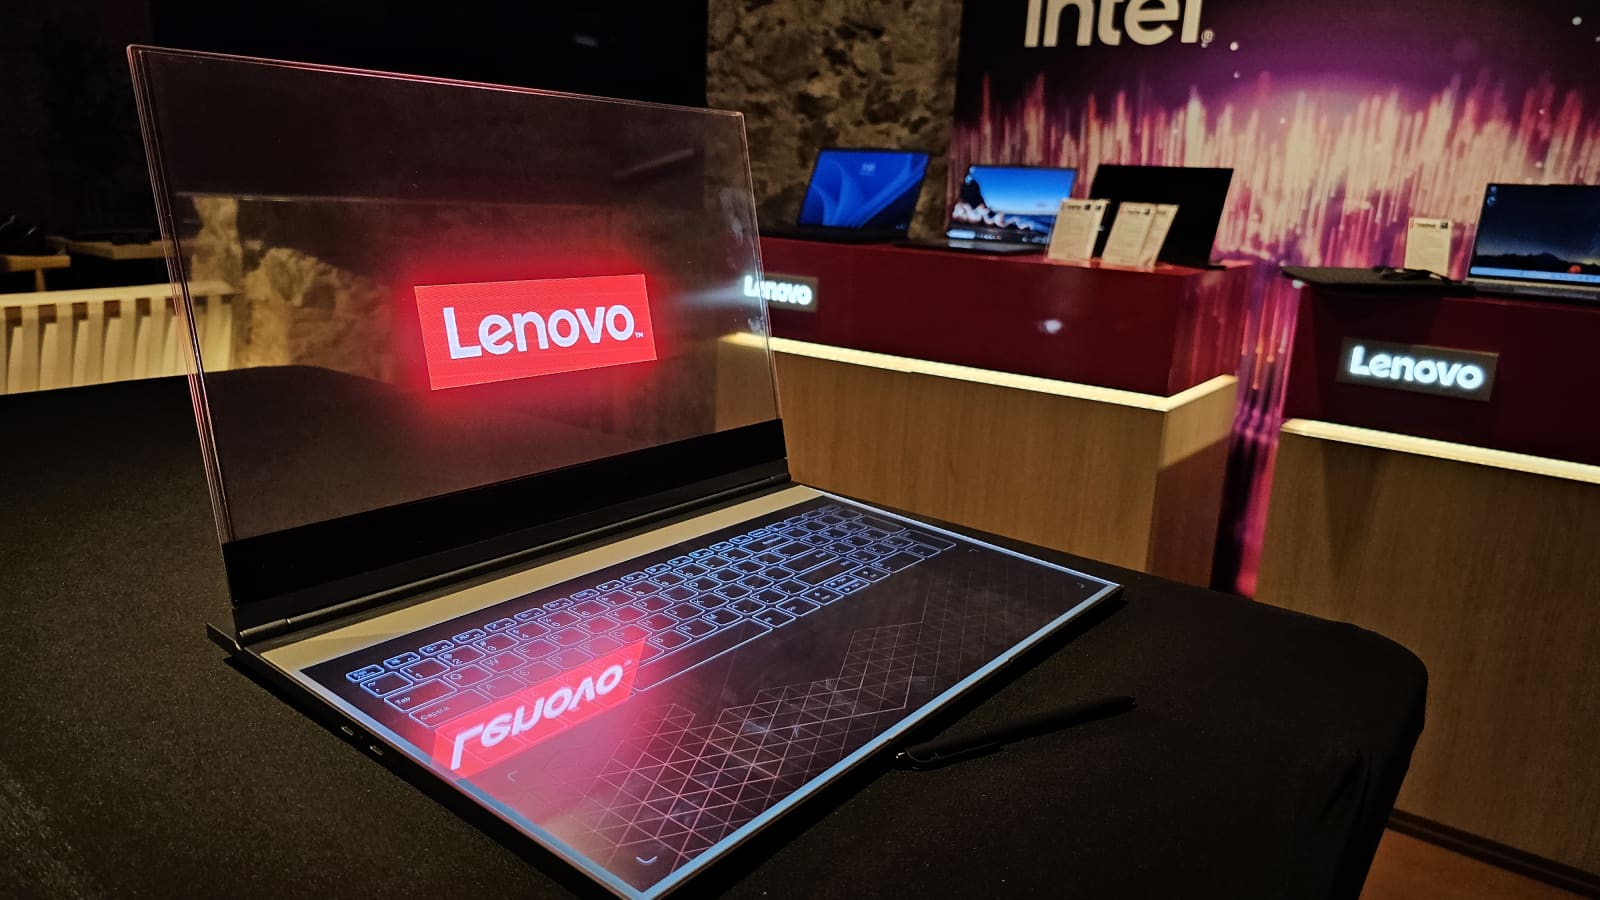 A closer Look at Lenovo’s transparent display Laptop